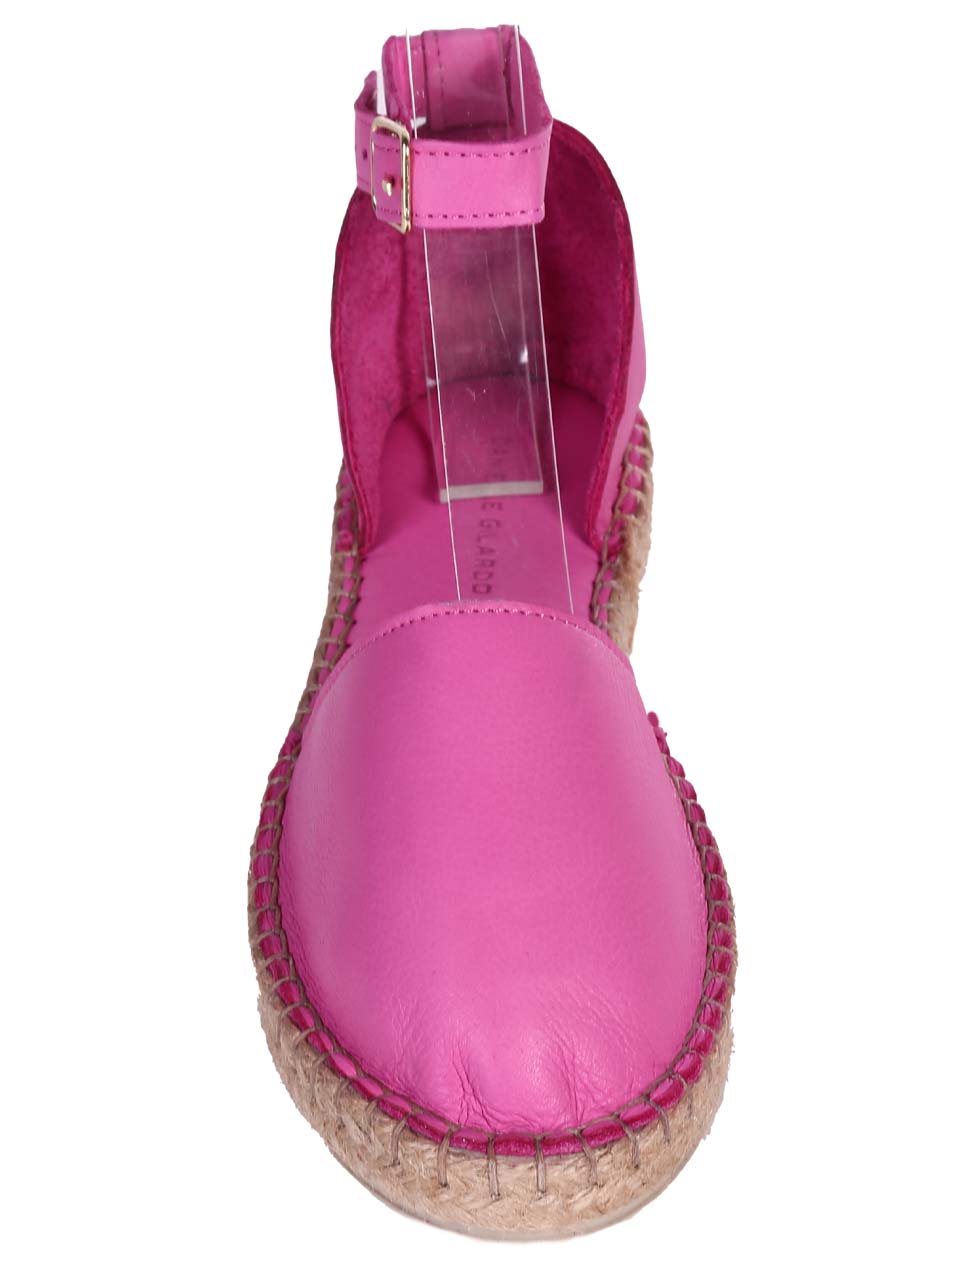 Ежедневни дамски обувки от естествена кожа в цвят фуксия 3AT-24349 fuchsia